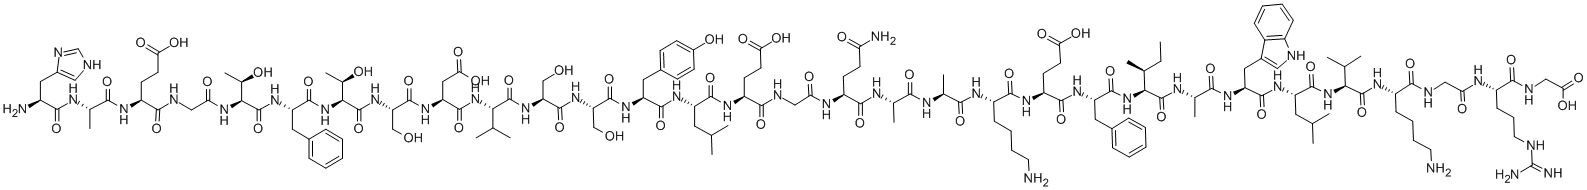 グルカゴン様ペプチド 1 (7-37) 化学構造式